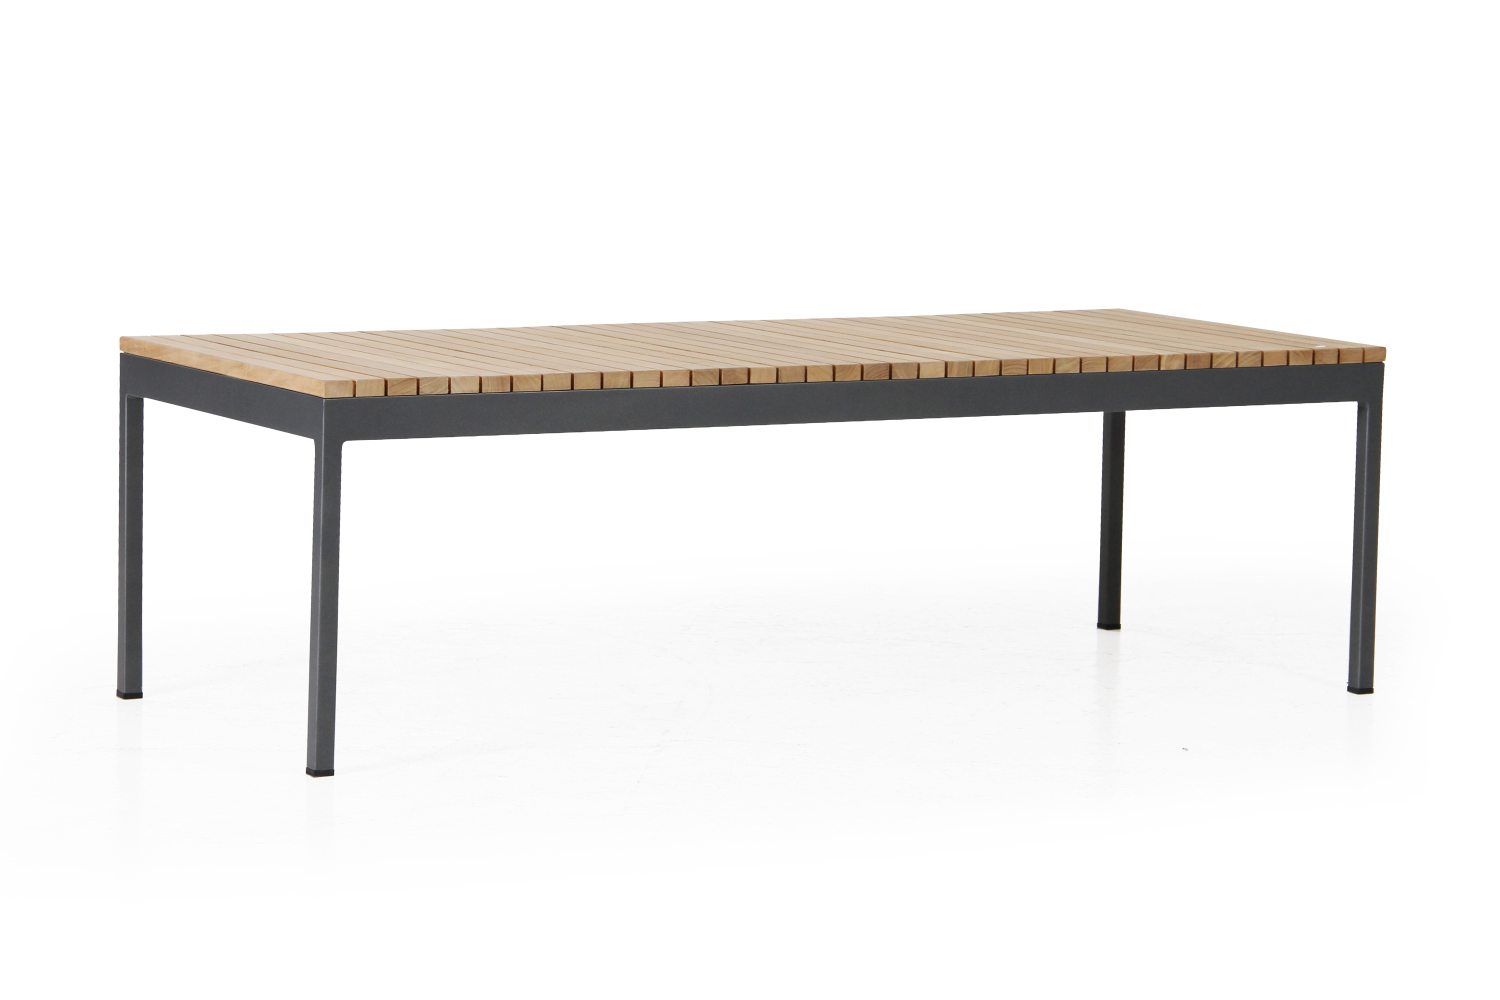 Zalongo soffbord i antracitlackerad aluminium och tvärställda teakribbor som bordsskiva.